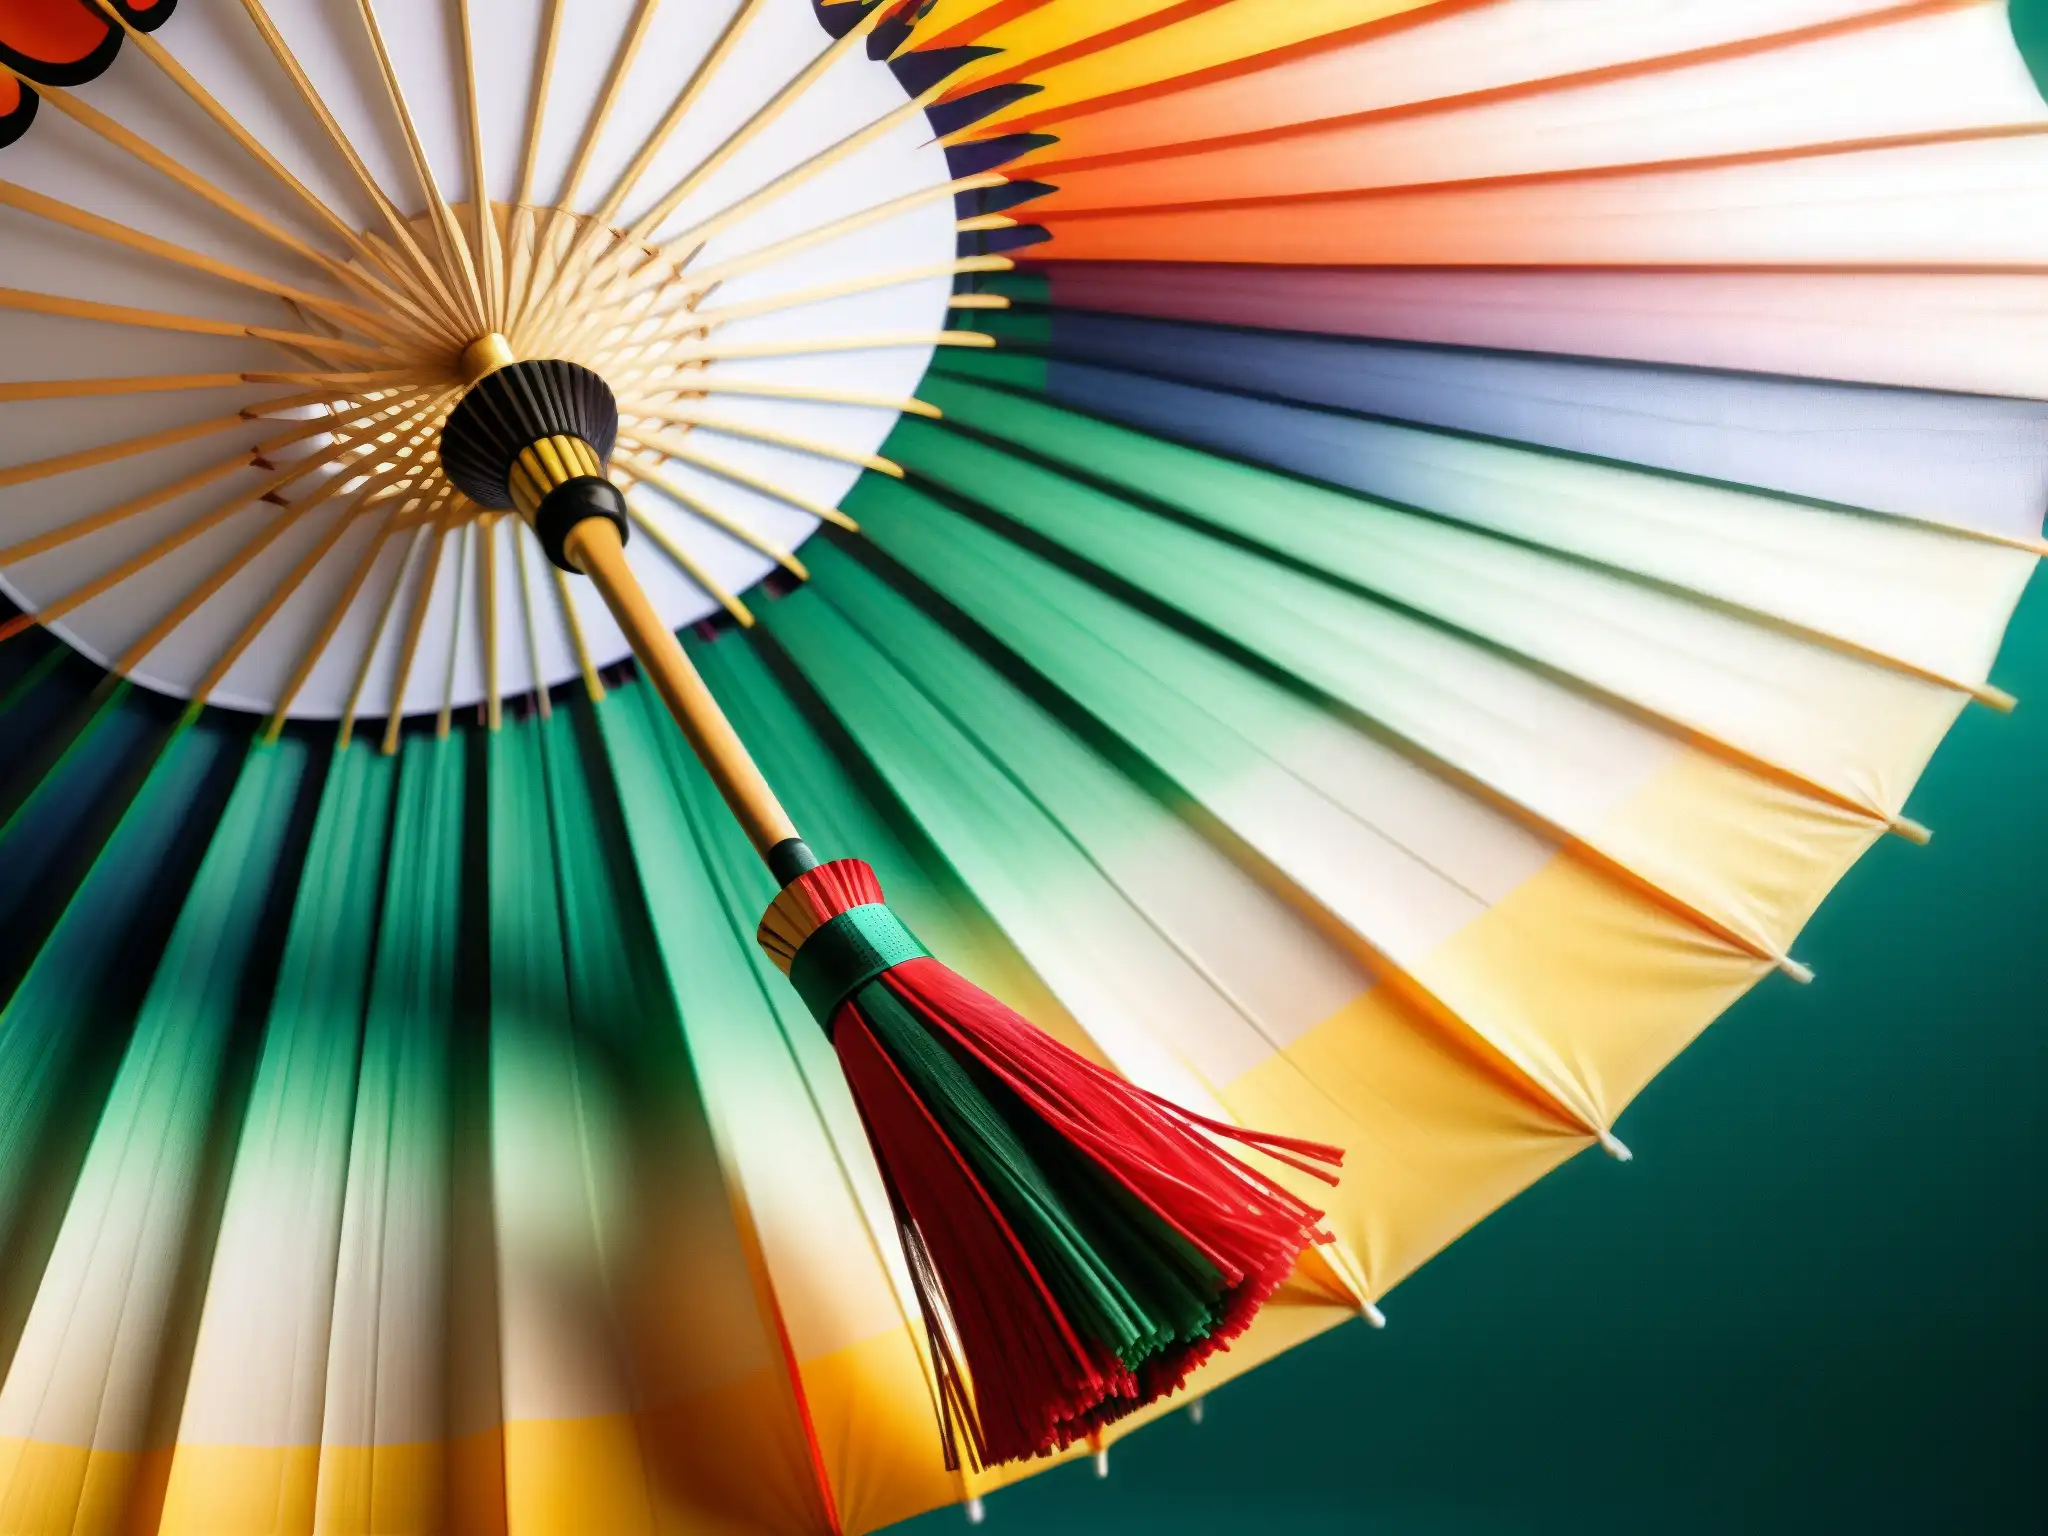 Un Karakasa japonés detallado muestra diseños pintados a mano en el paraguas de papel, el elegante mango de madera y los delicados flecos de seda